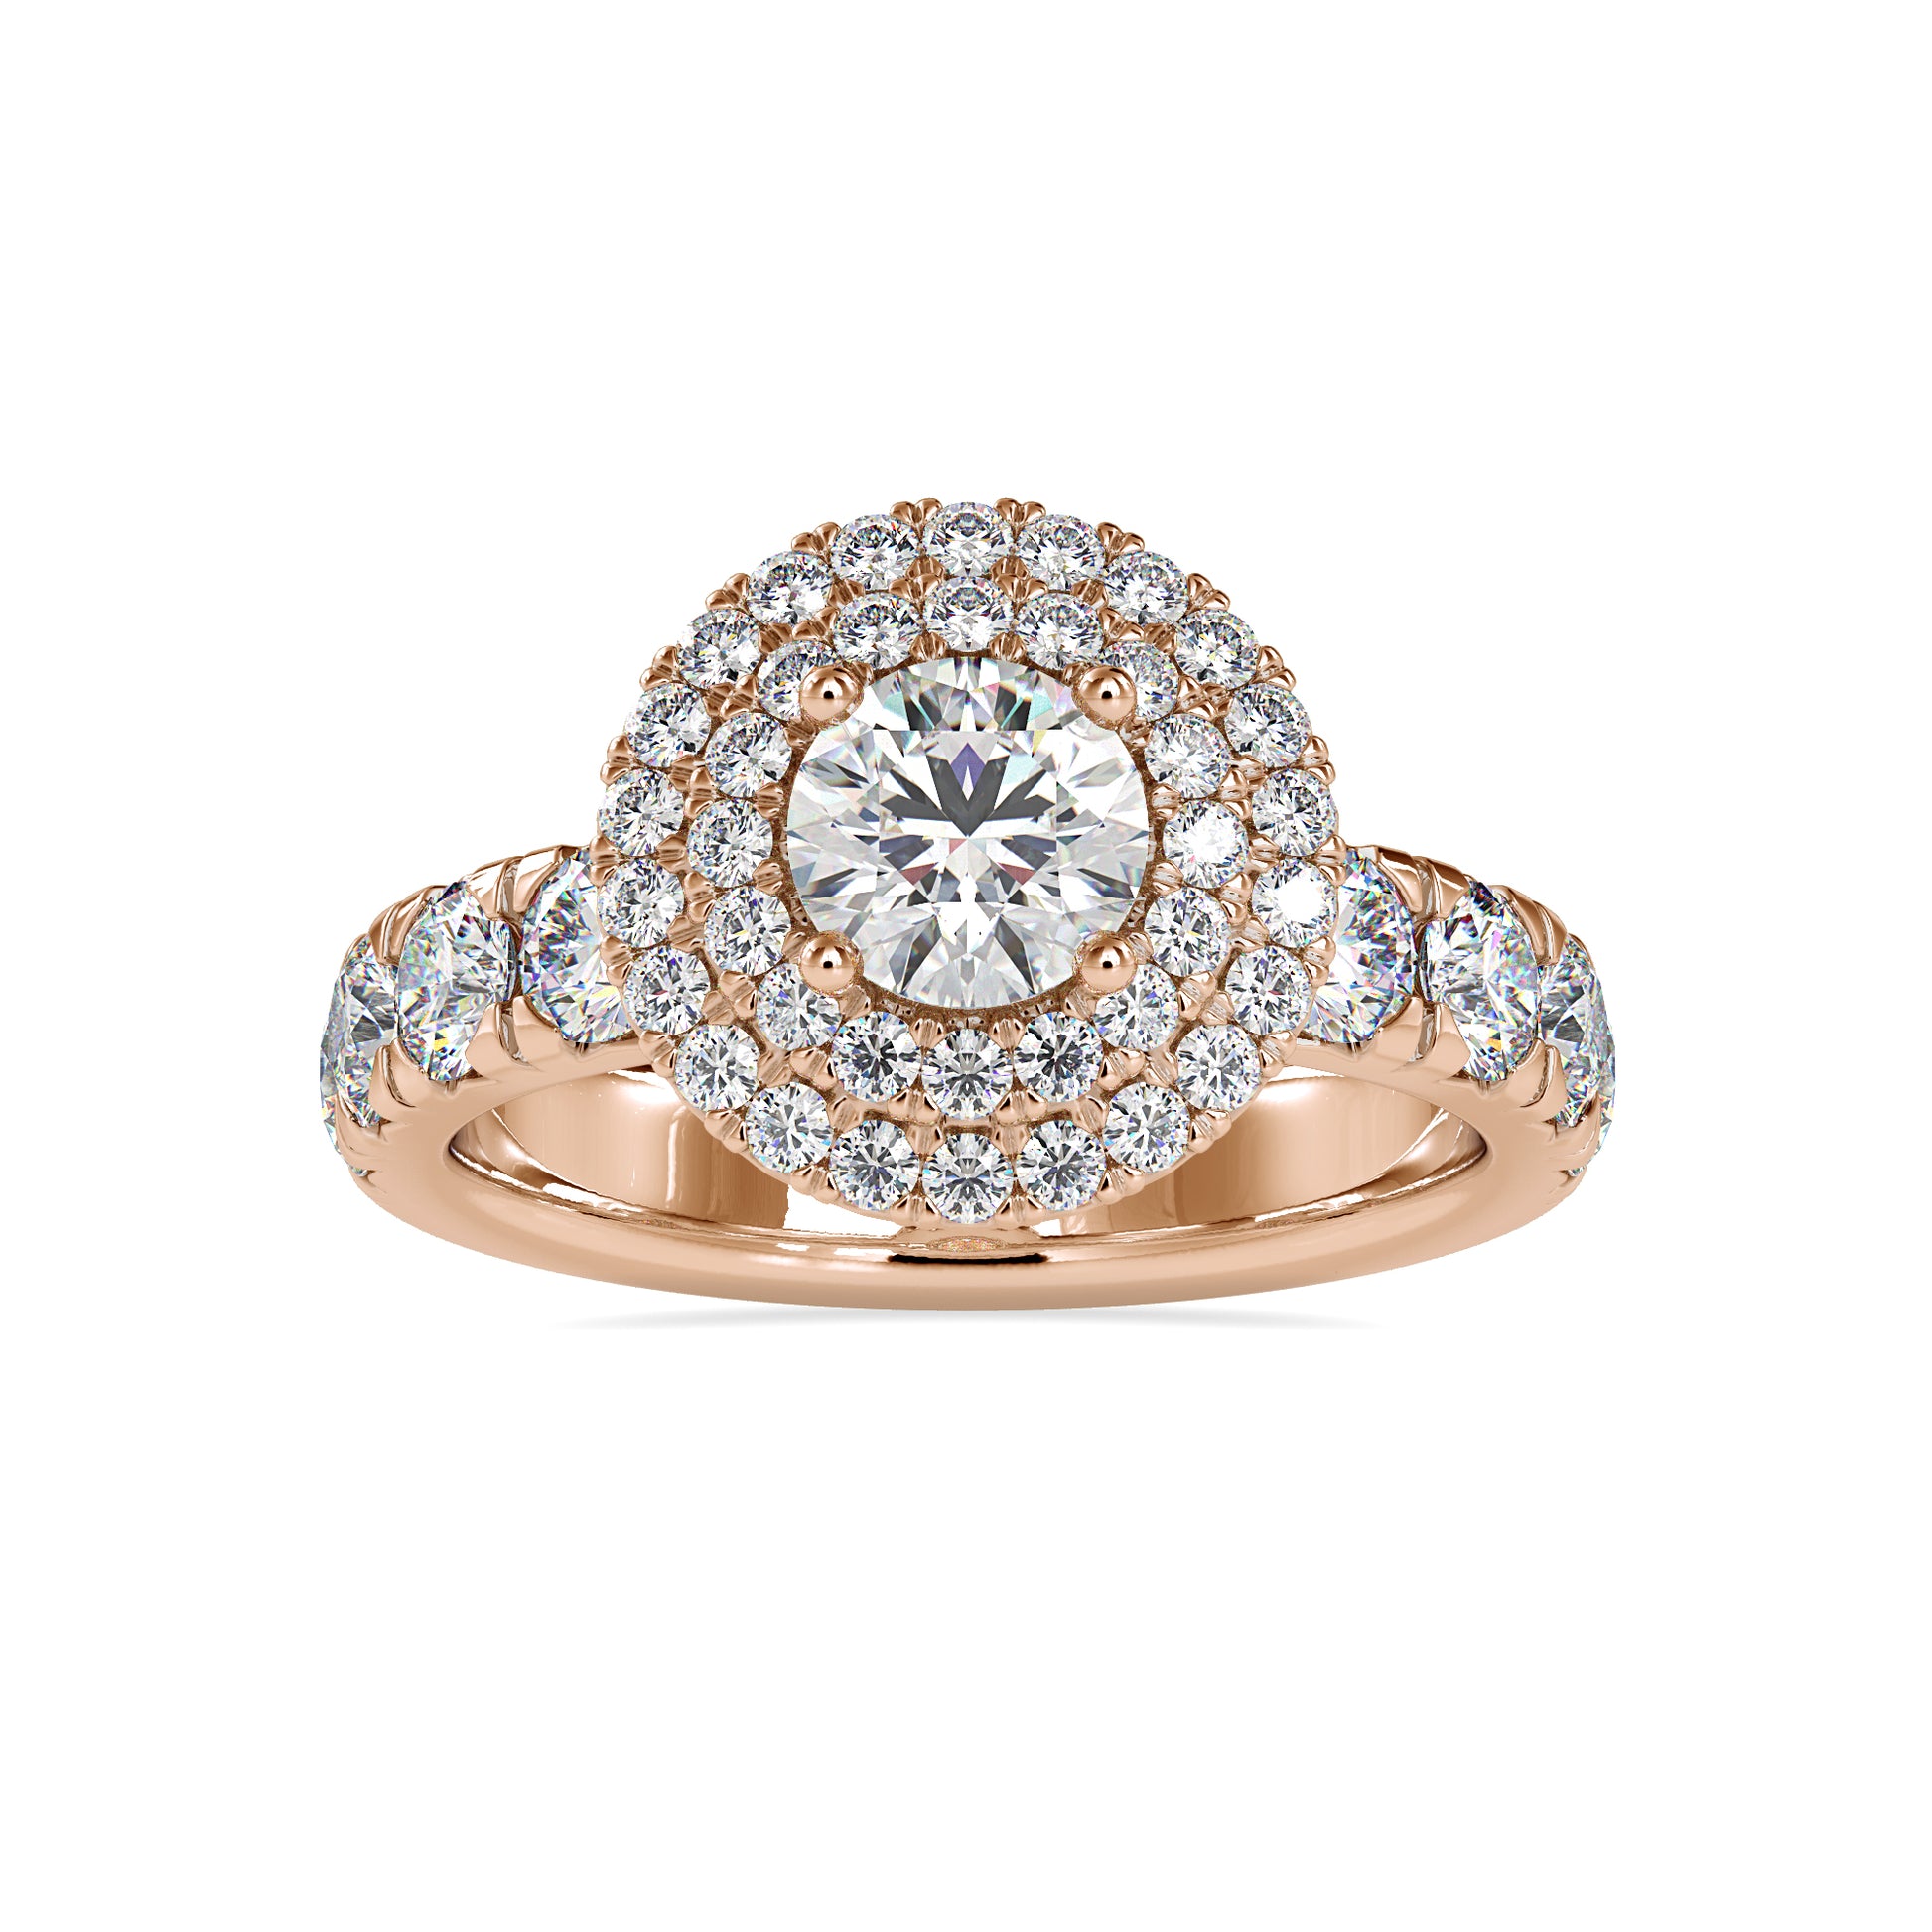 The Venus moissanite diamond Ring - Vai Ra